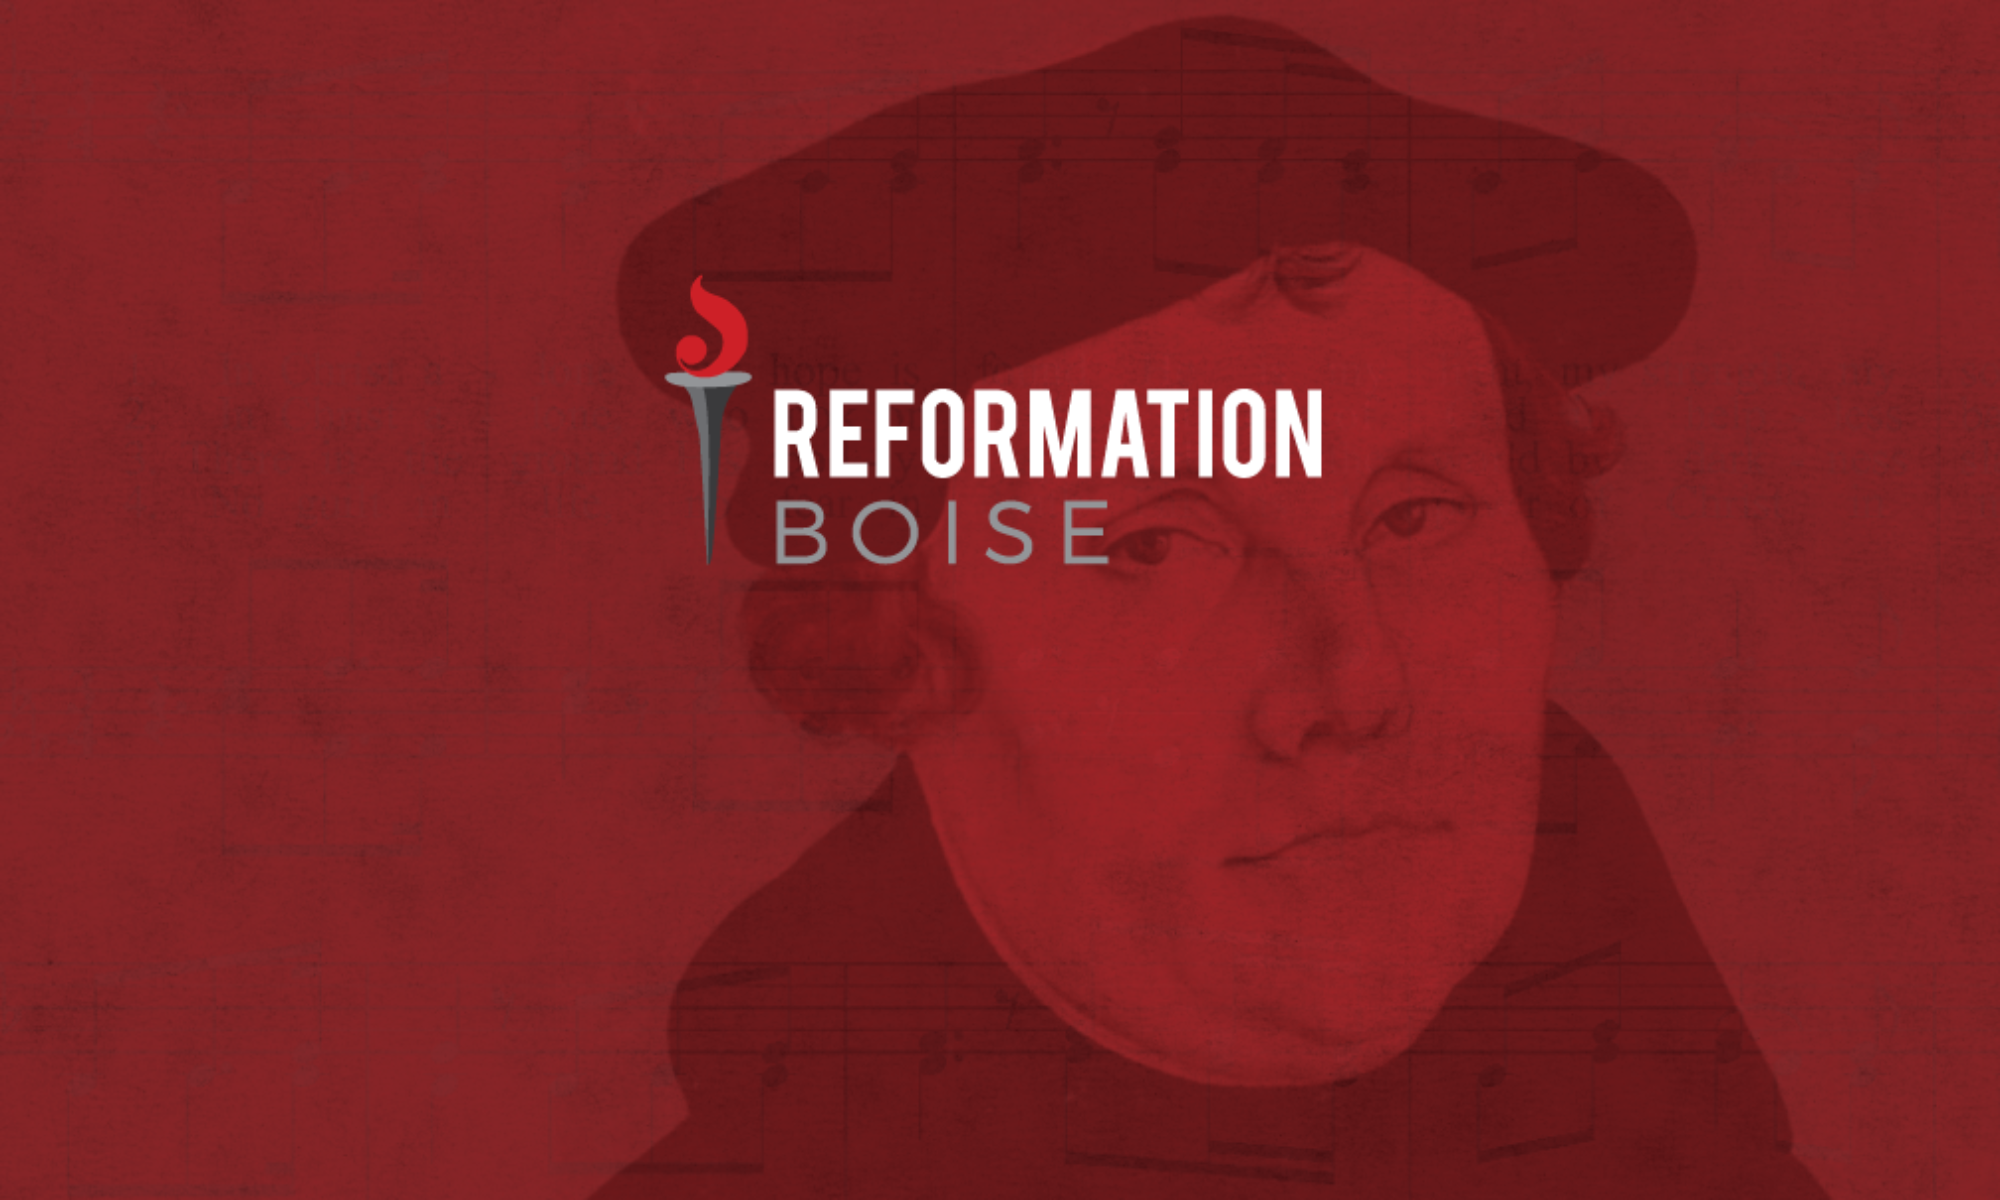 ReformationBoise.com